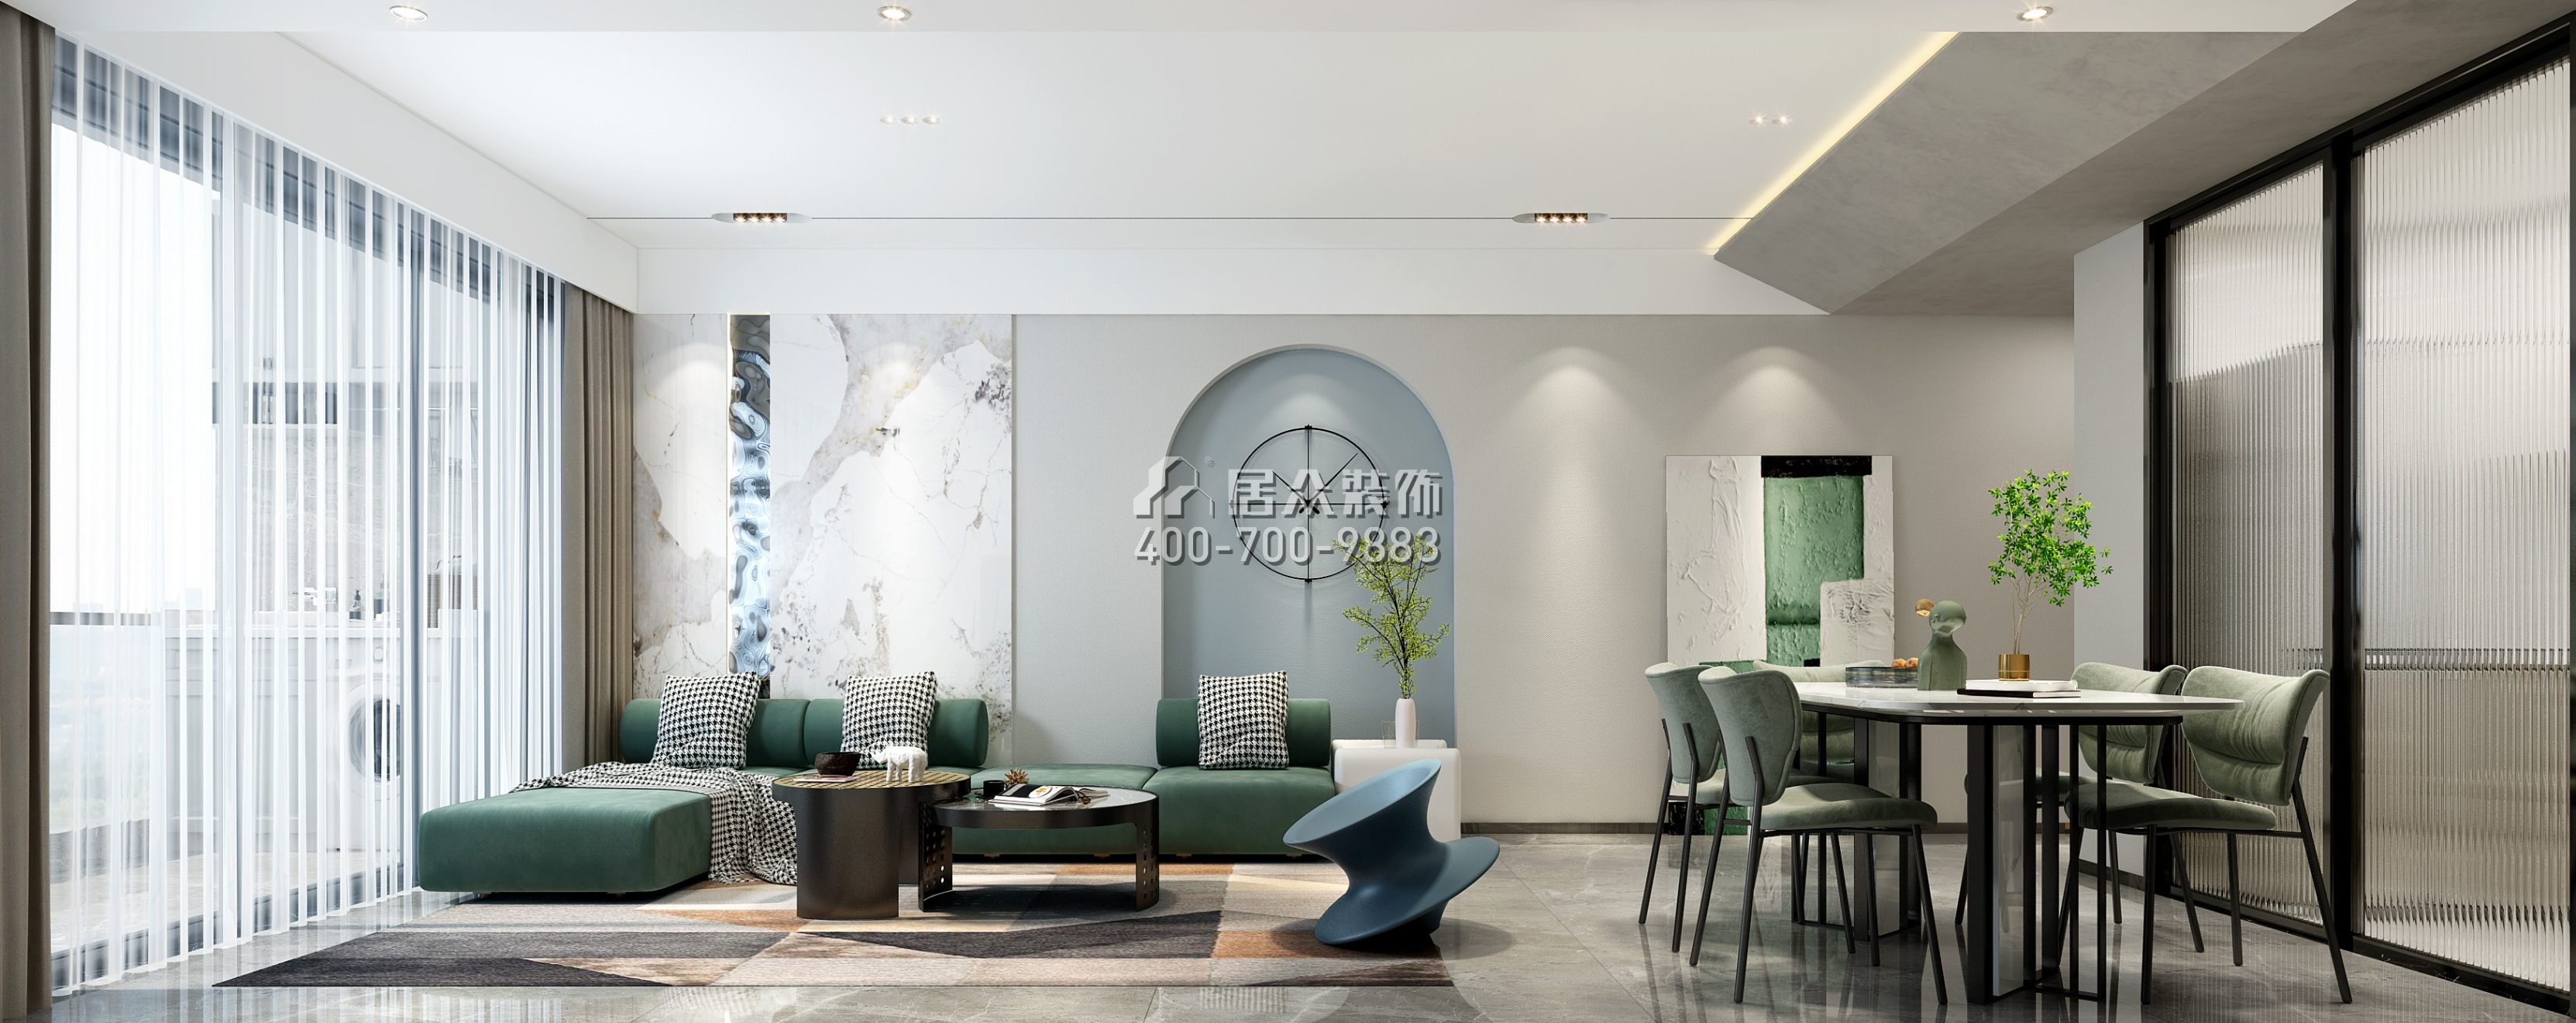 鴻榮源壹城中心112平方米現代簡約風格平層戶型客餐廳一體裝修效果圖